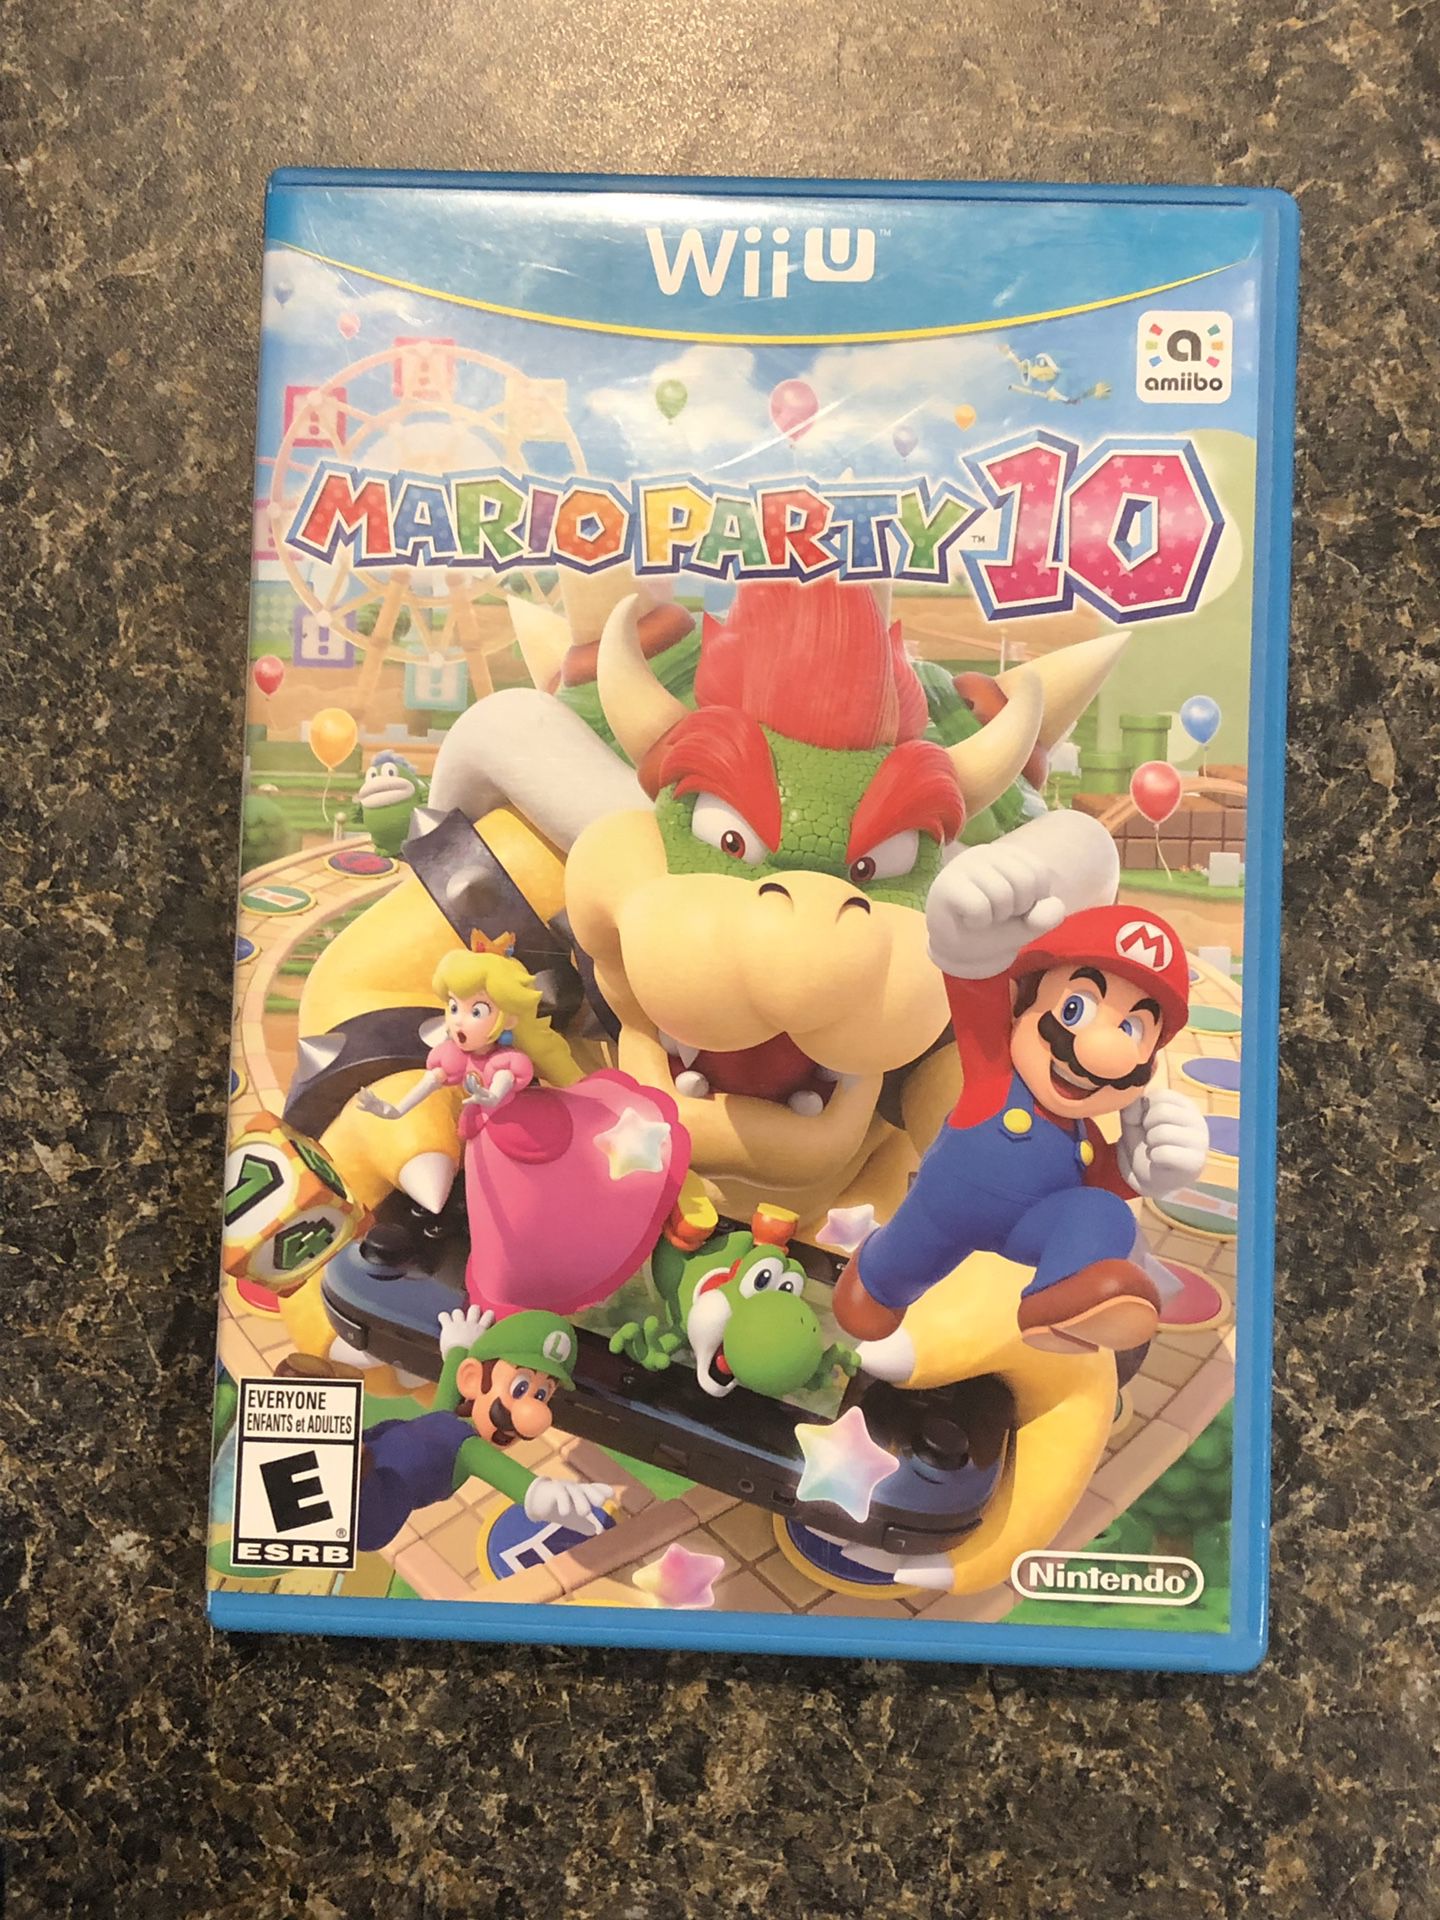 Nintendo Wii U Mario Party 10 video game